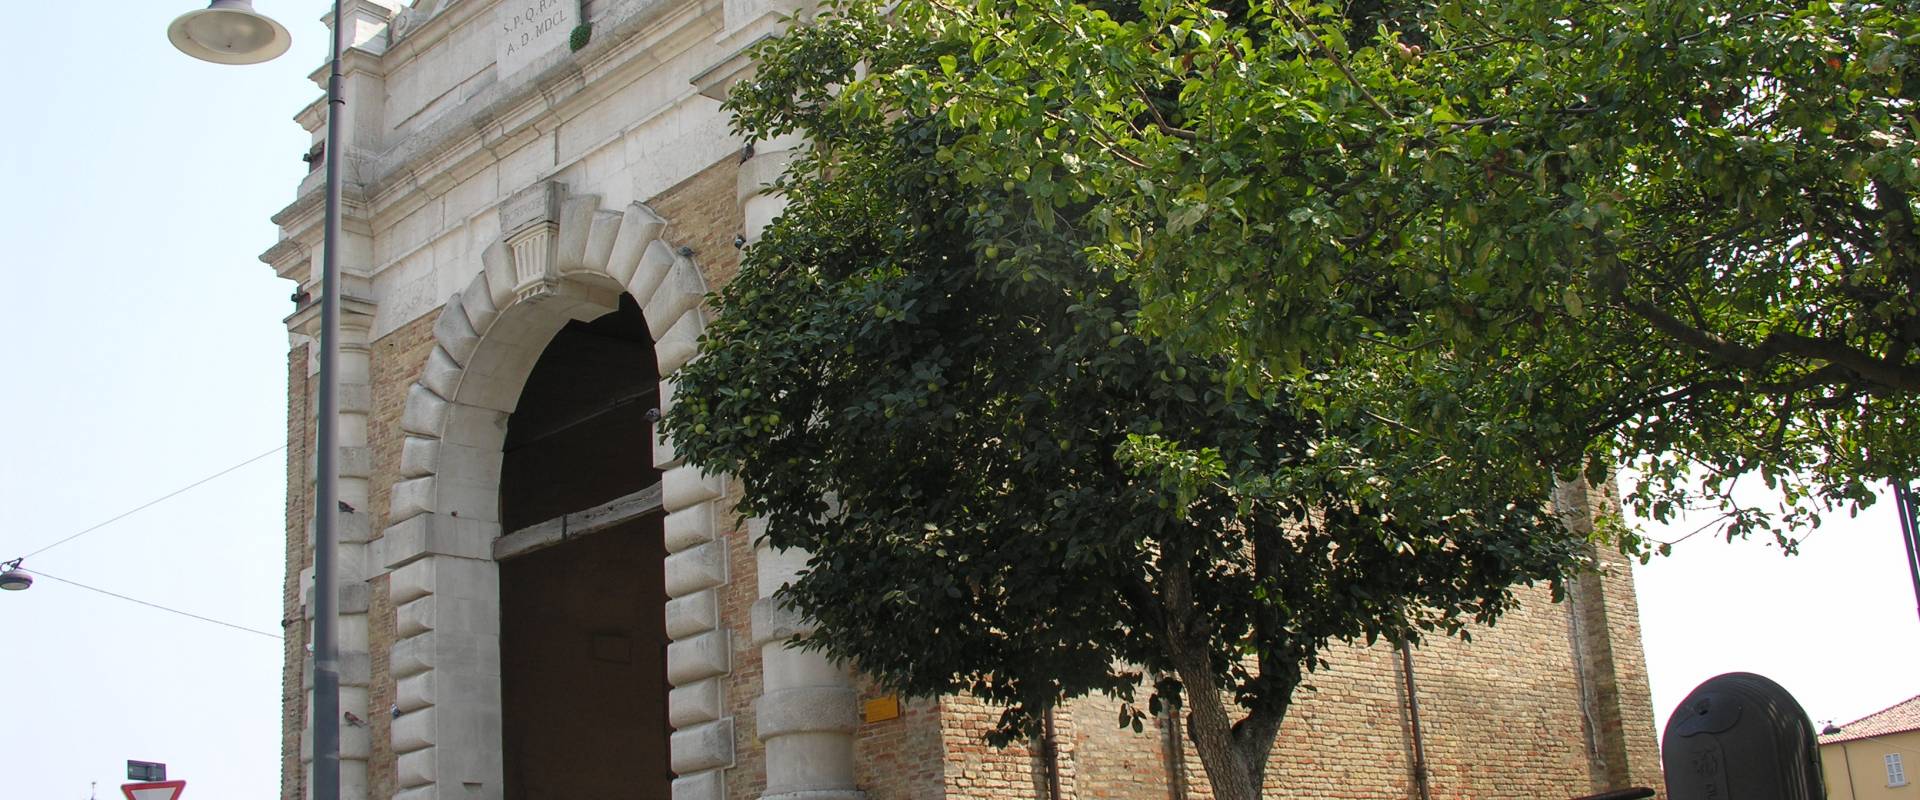 Porta serrata facciata photo by Montanarigiorgio